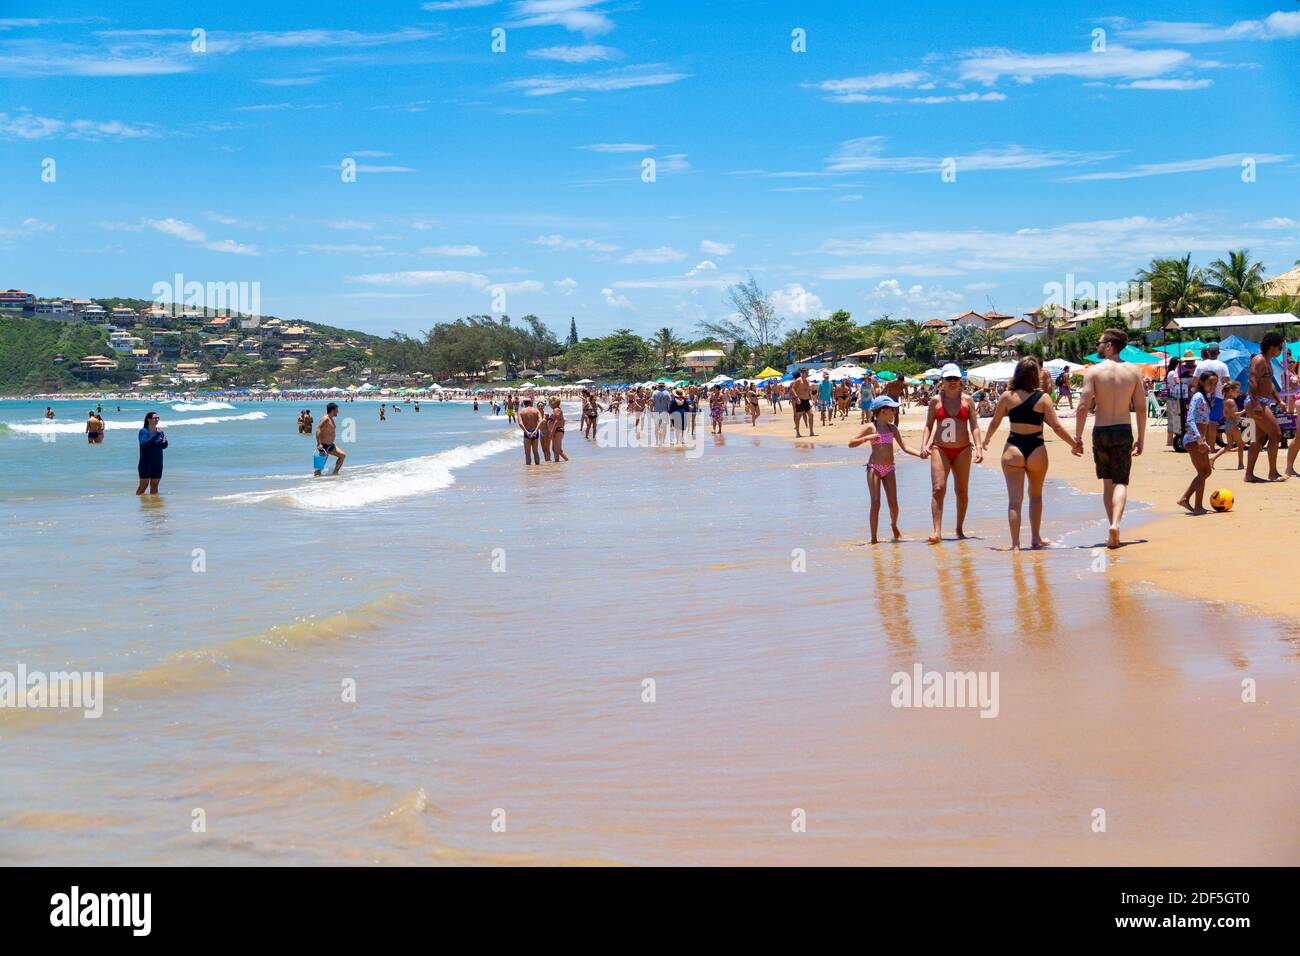 Buzios, Rio de Janeiro, Brésil – 22 décembre 2019 : Praia da Geriba, vue panoramique de cette belle plage. Les gens qui marchent sur la plage. Banque D'Images